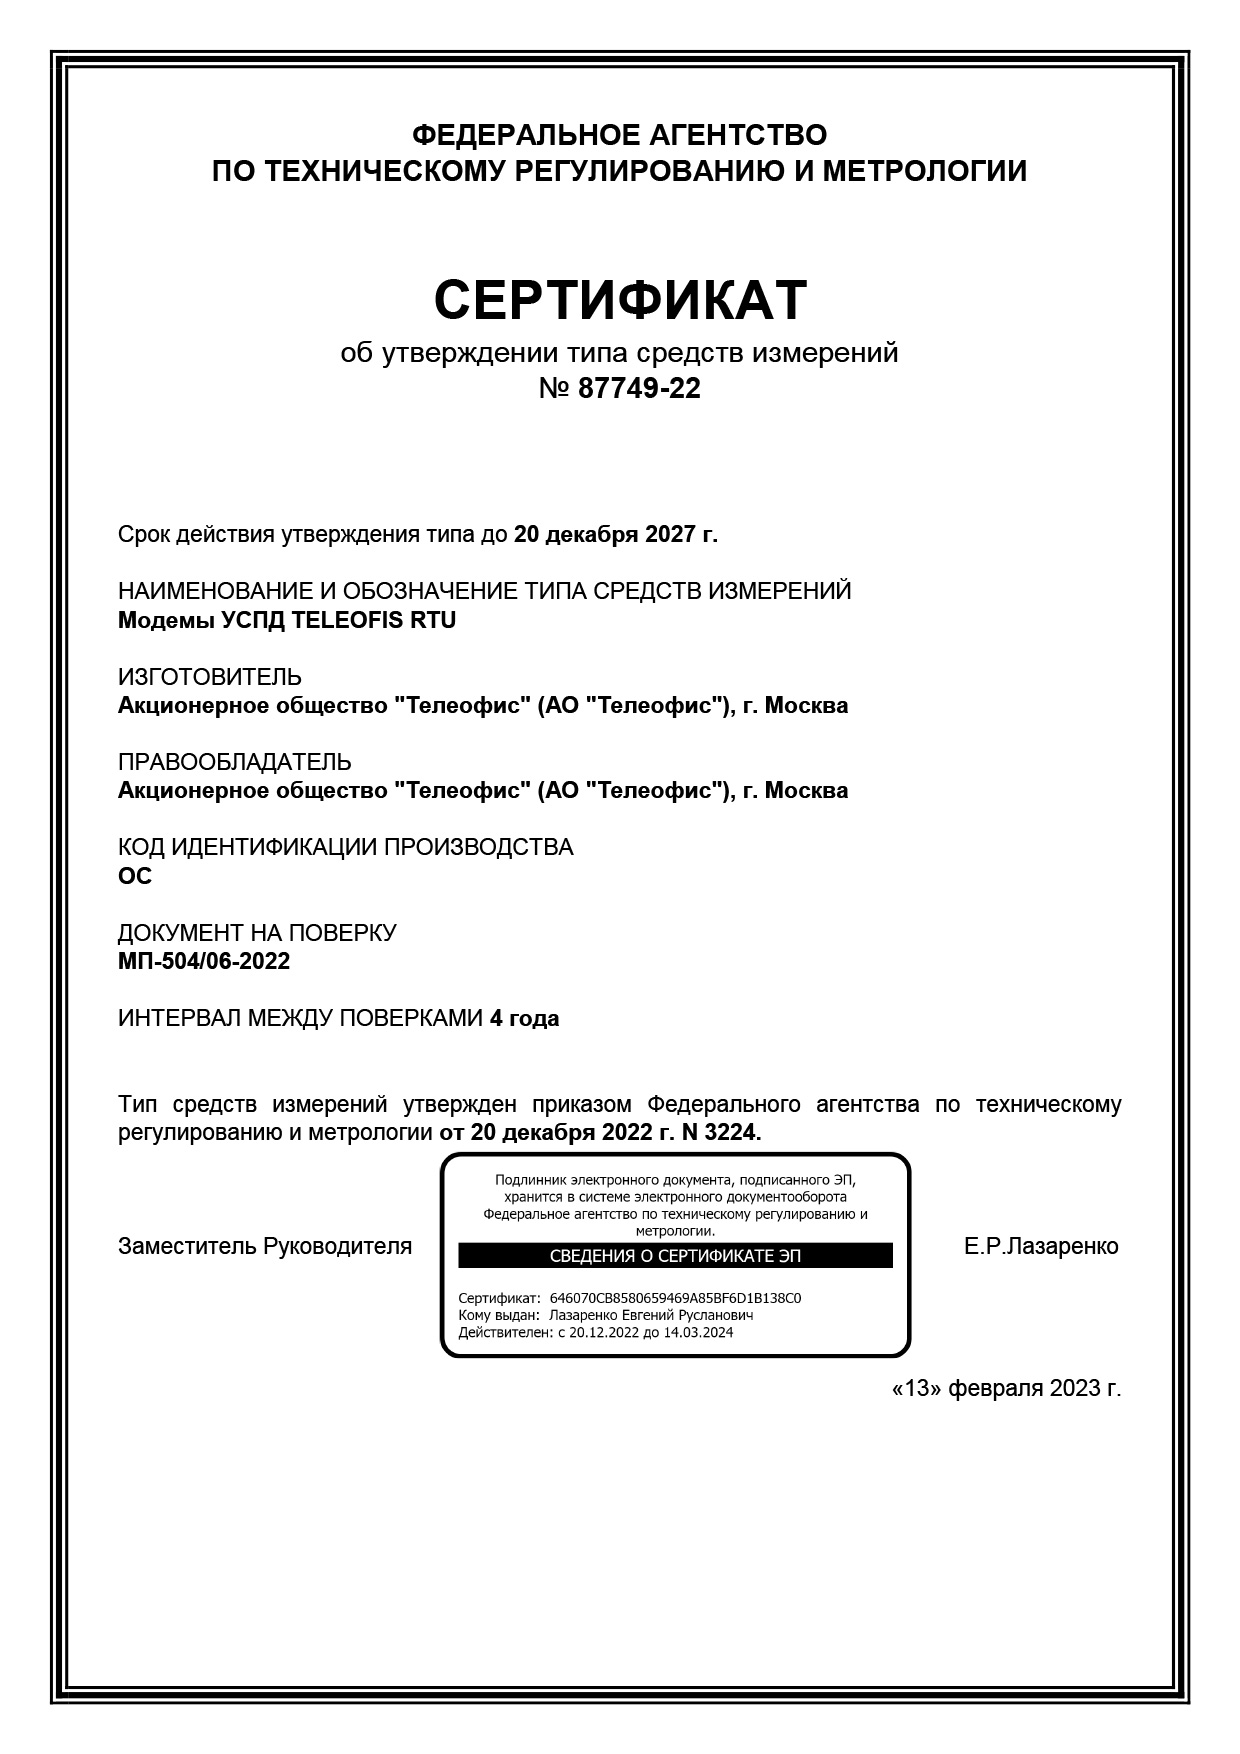 Метрологический сертификат УСПД TELEOFIS